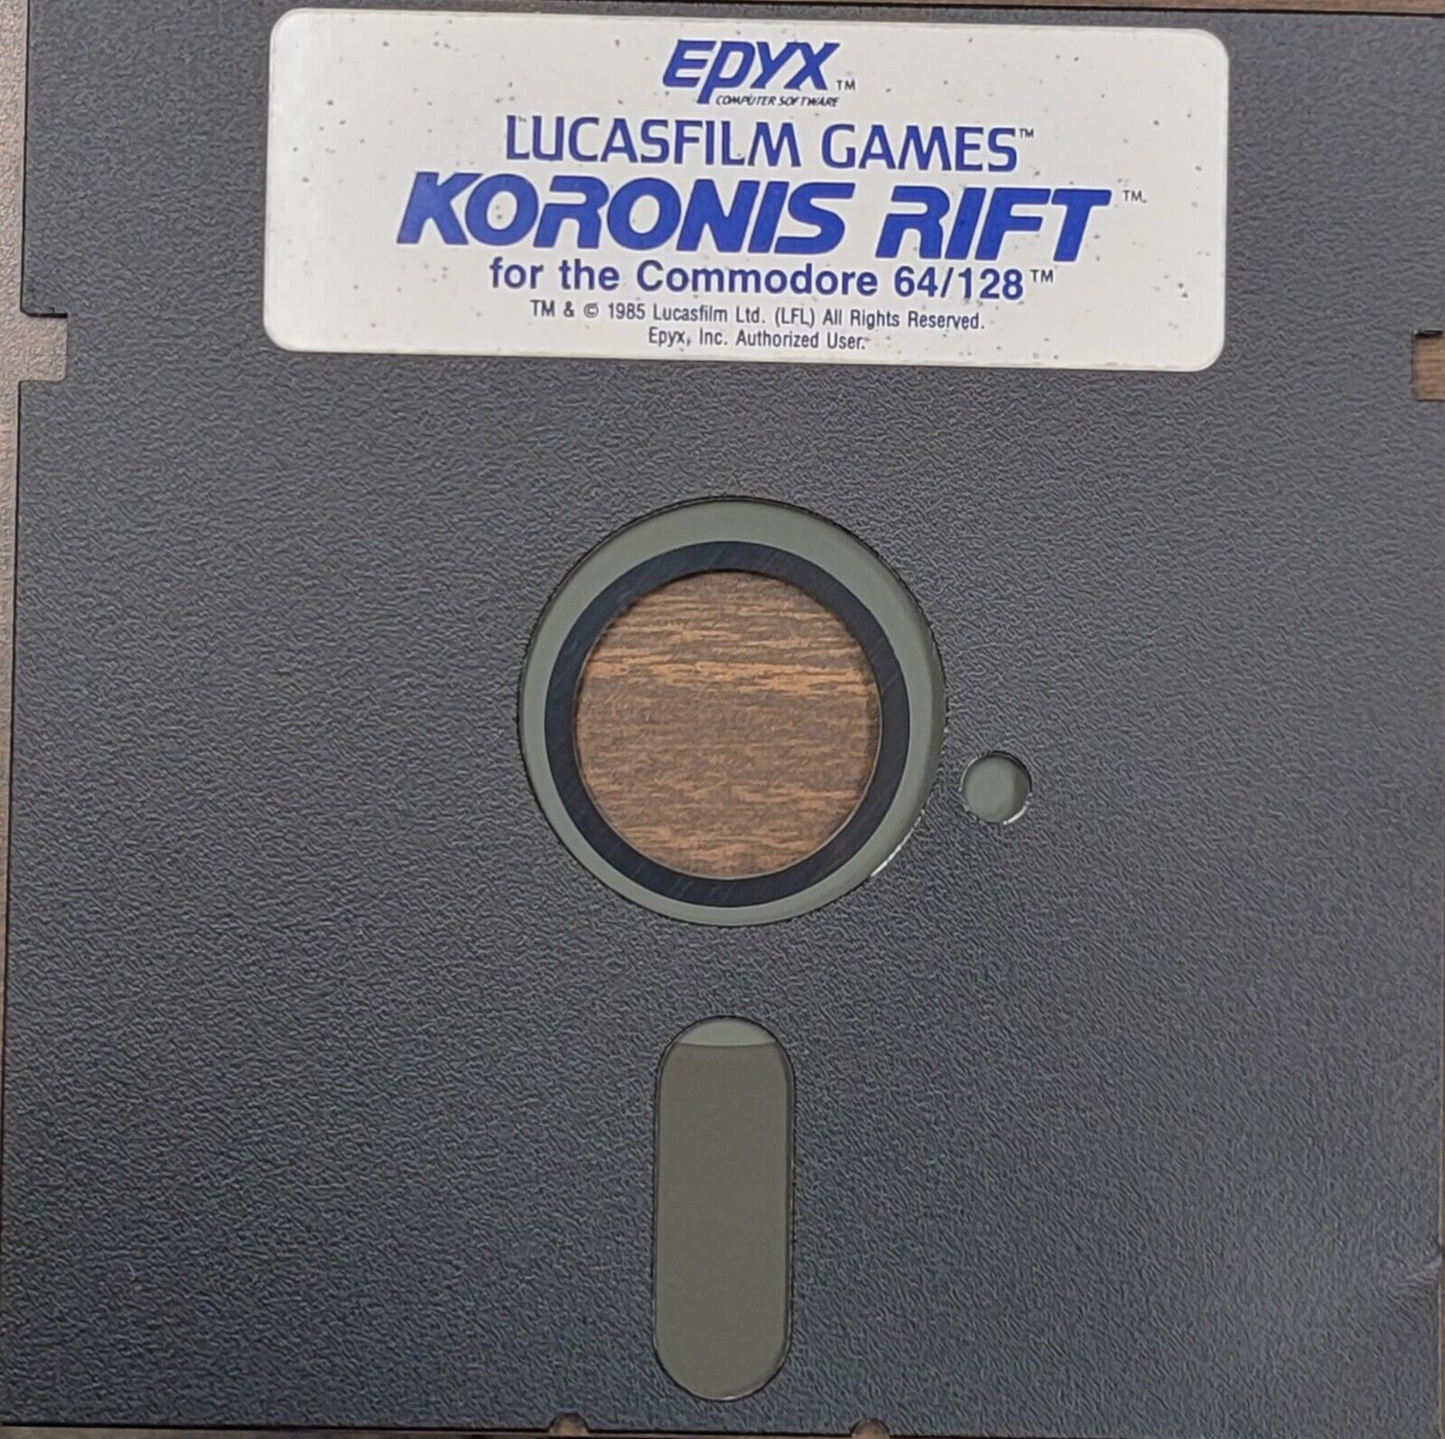 Koronis Rift - Commodore 64